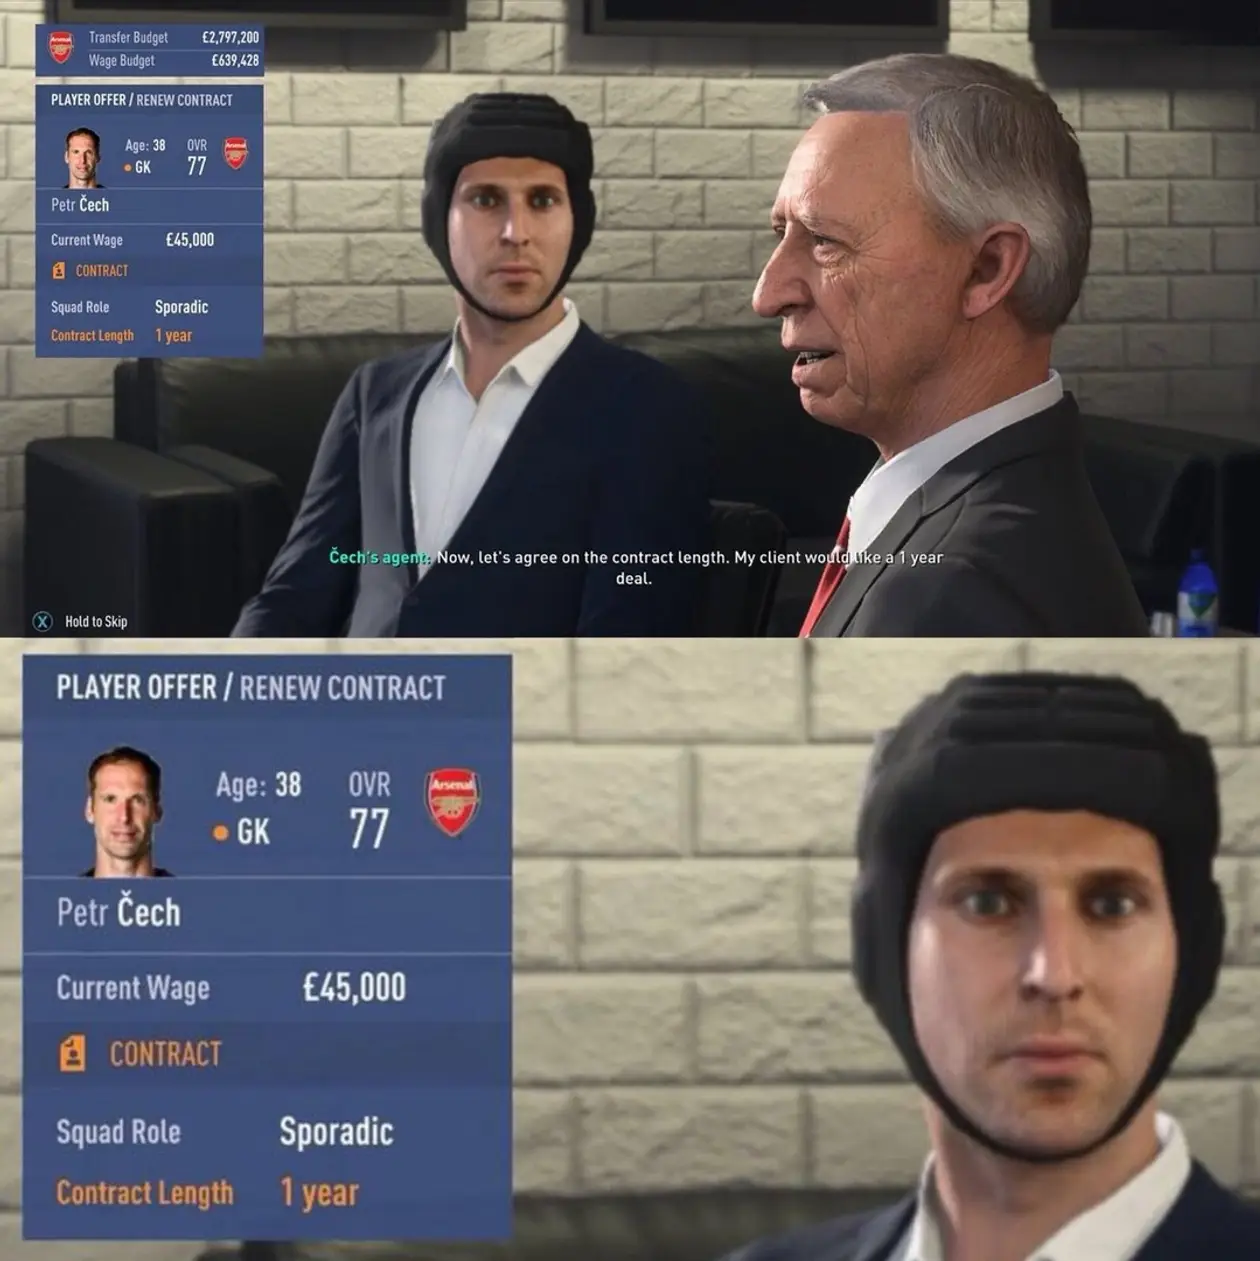 Шлем или галстук? В FIFA 19 определились с внешним видом Чеха на переговорах